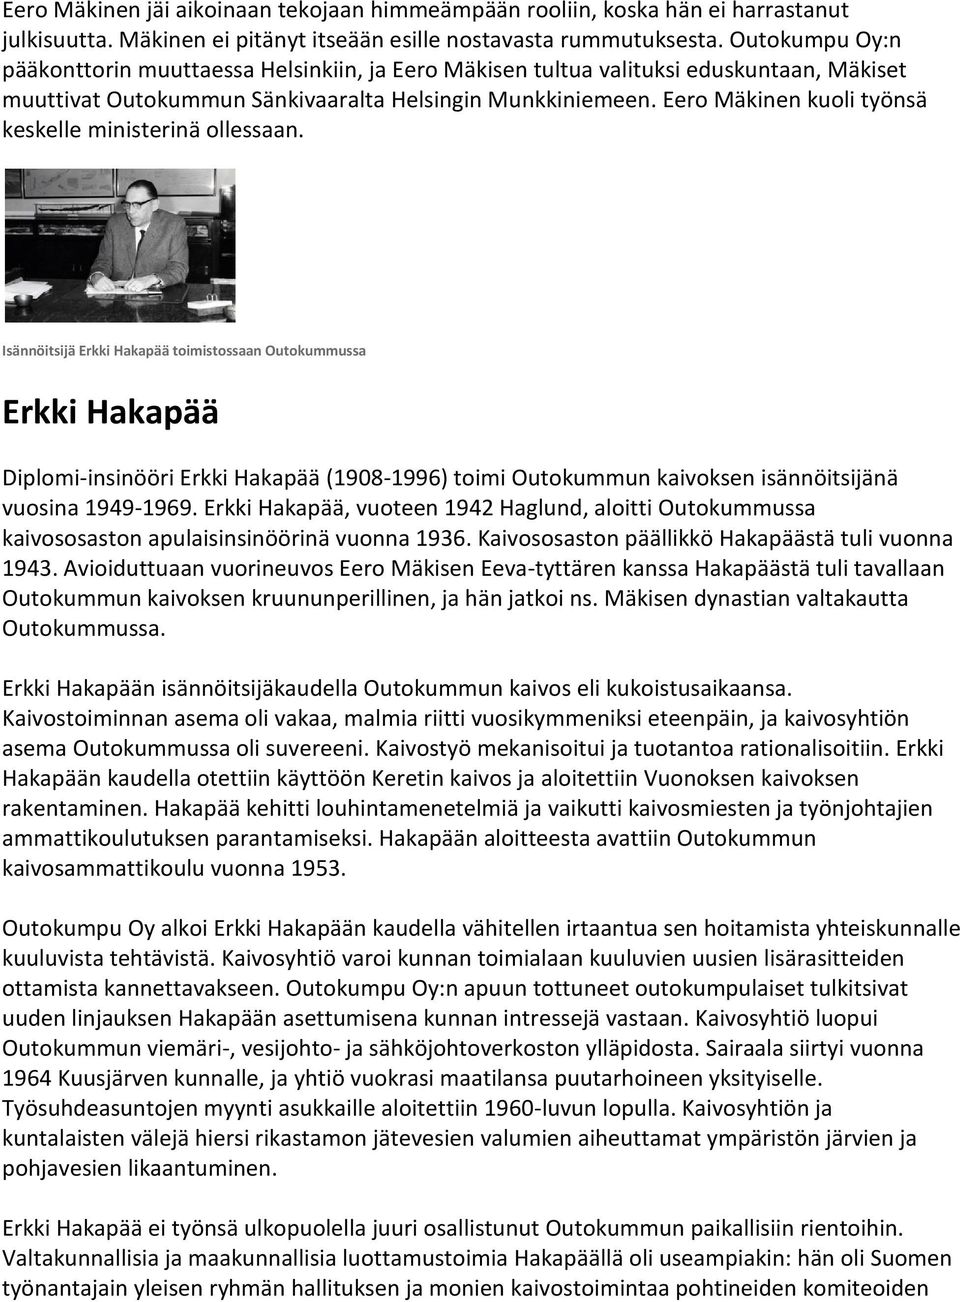 Eero Mäkinen kuoli työnsä keskelle ministerinä ollessaan.